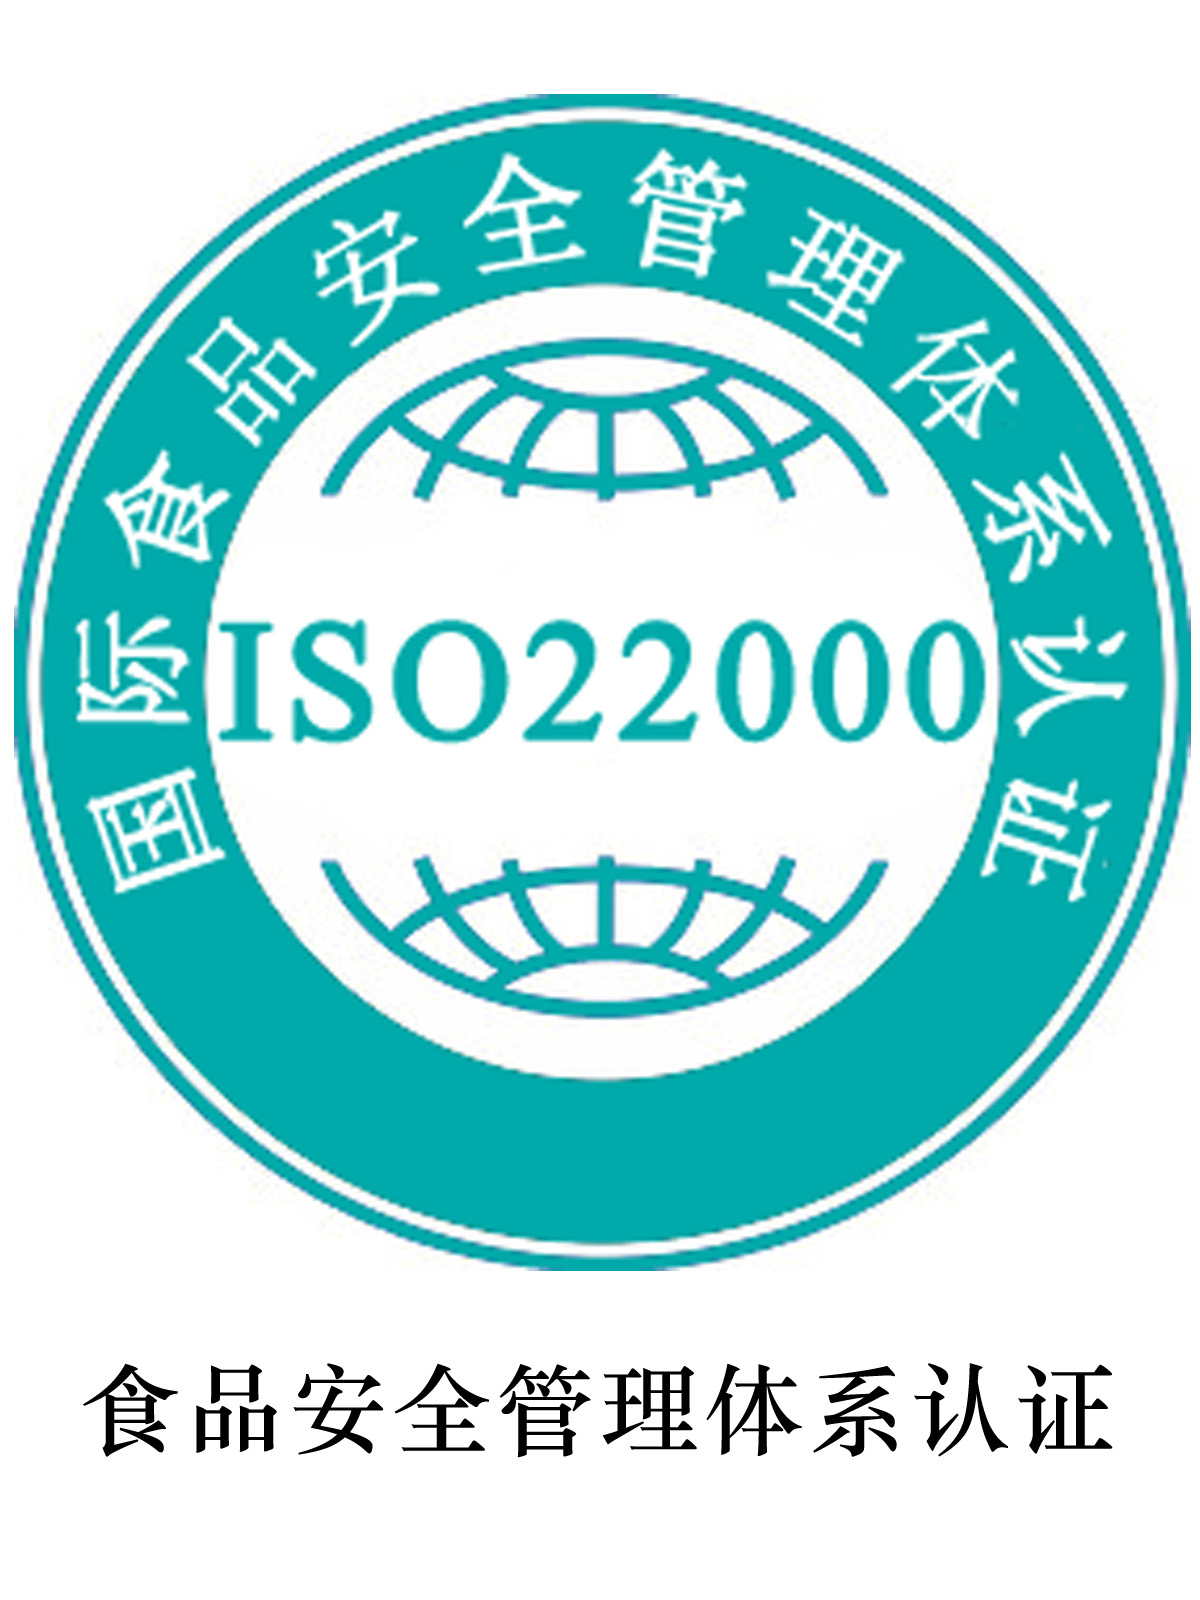 呼和浩特ISO22000认证材料攻略